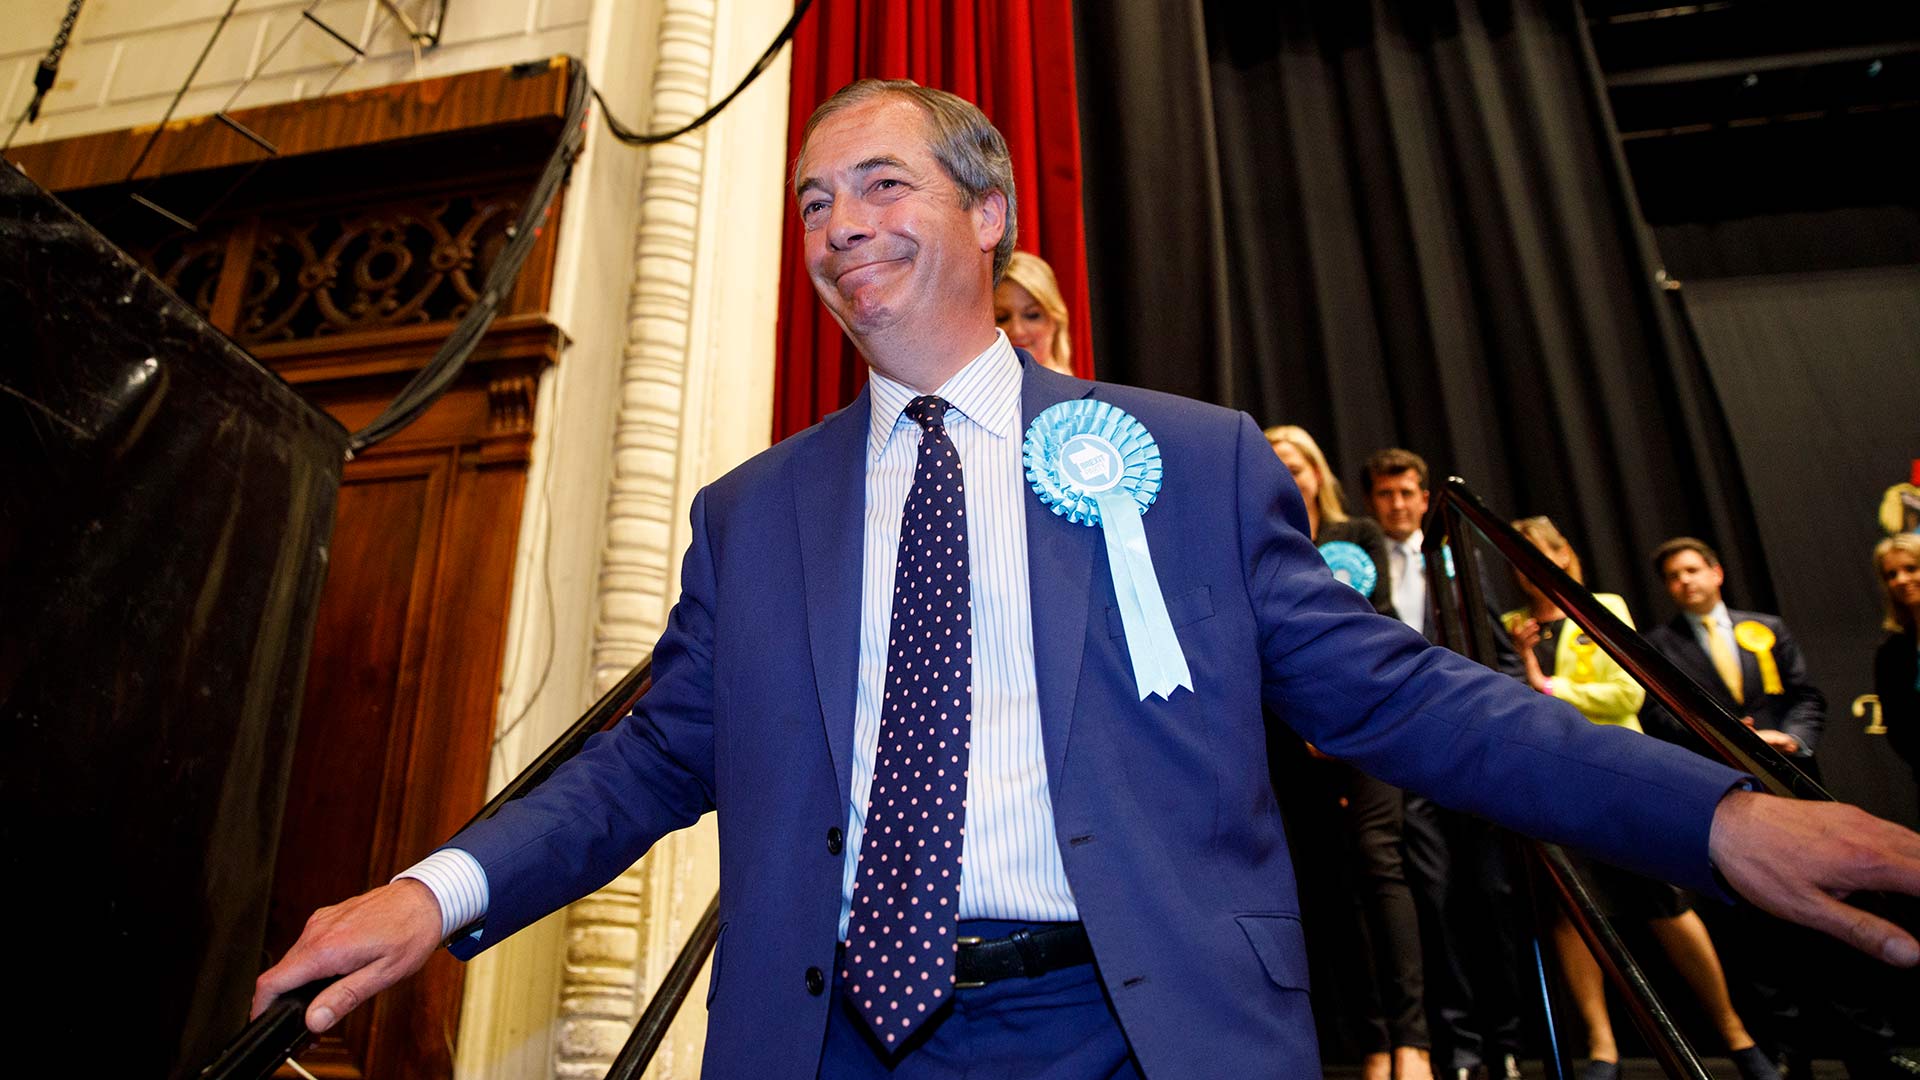 La victoria de Farage en las europeas aboca al Reino Unido a un Brexit duro